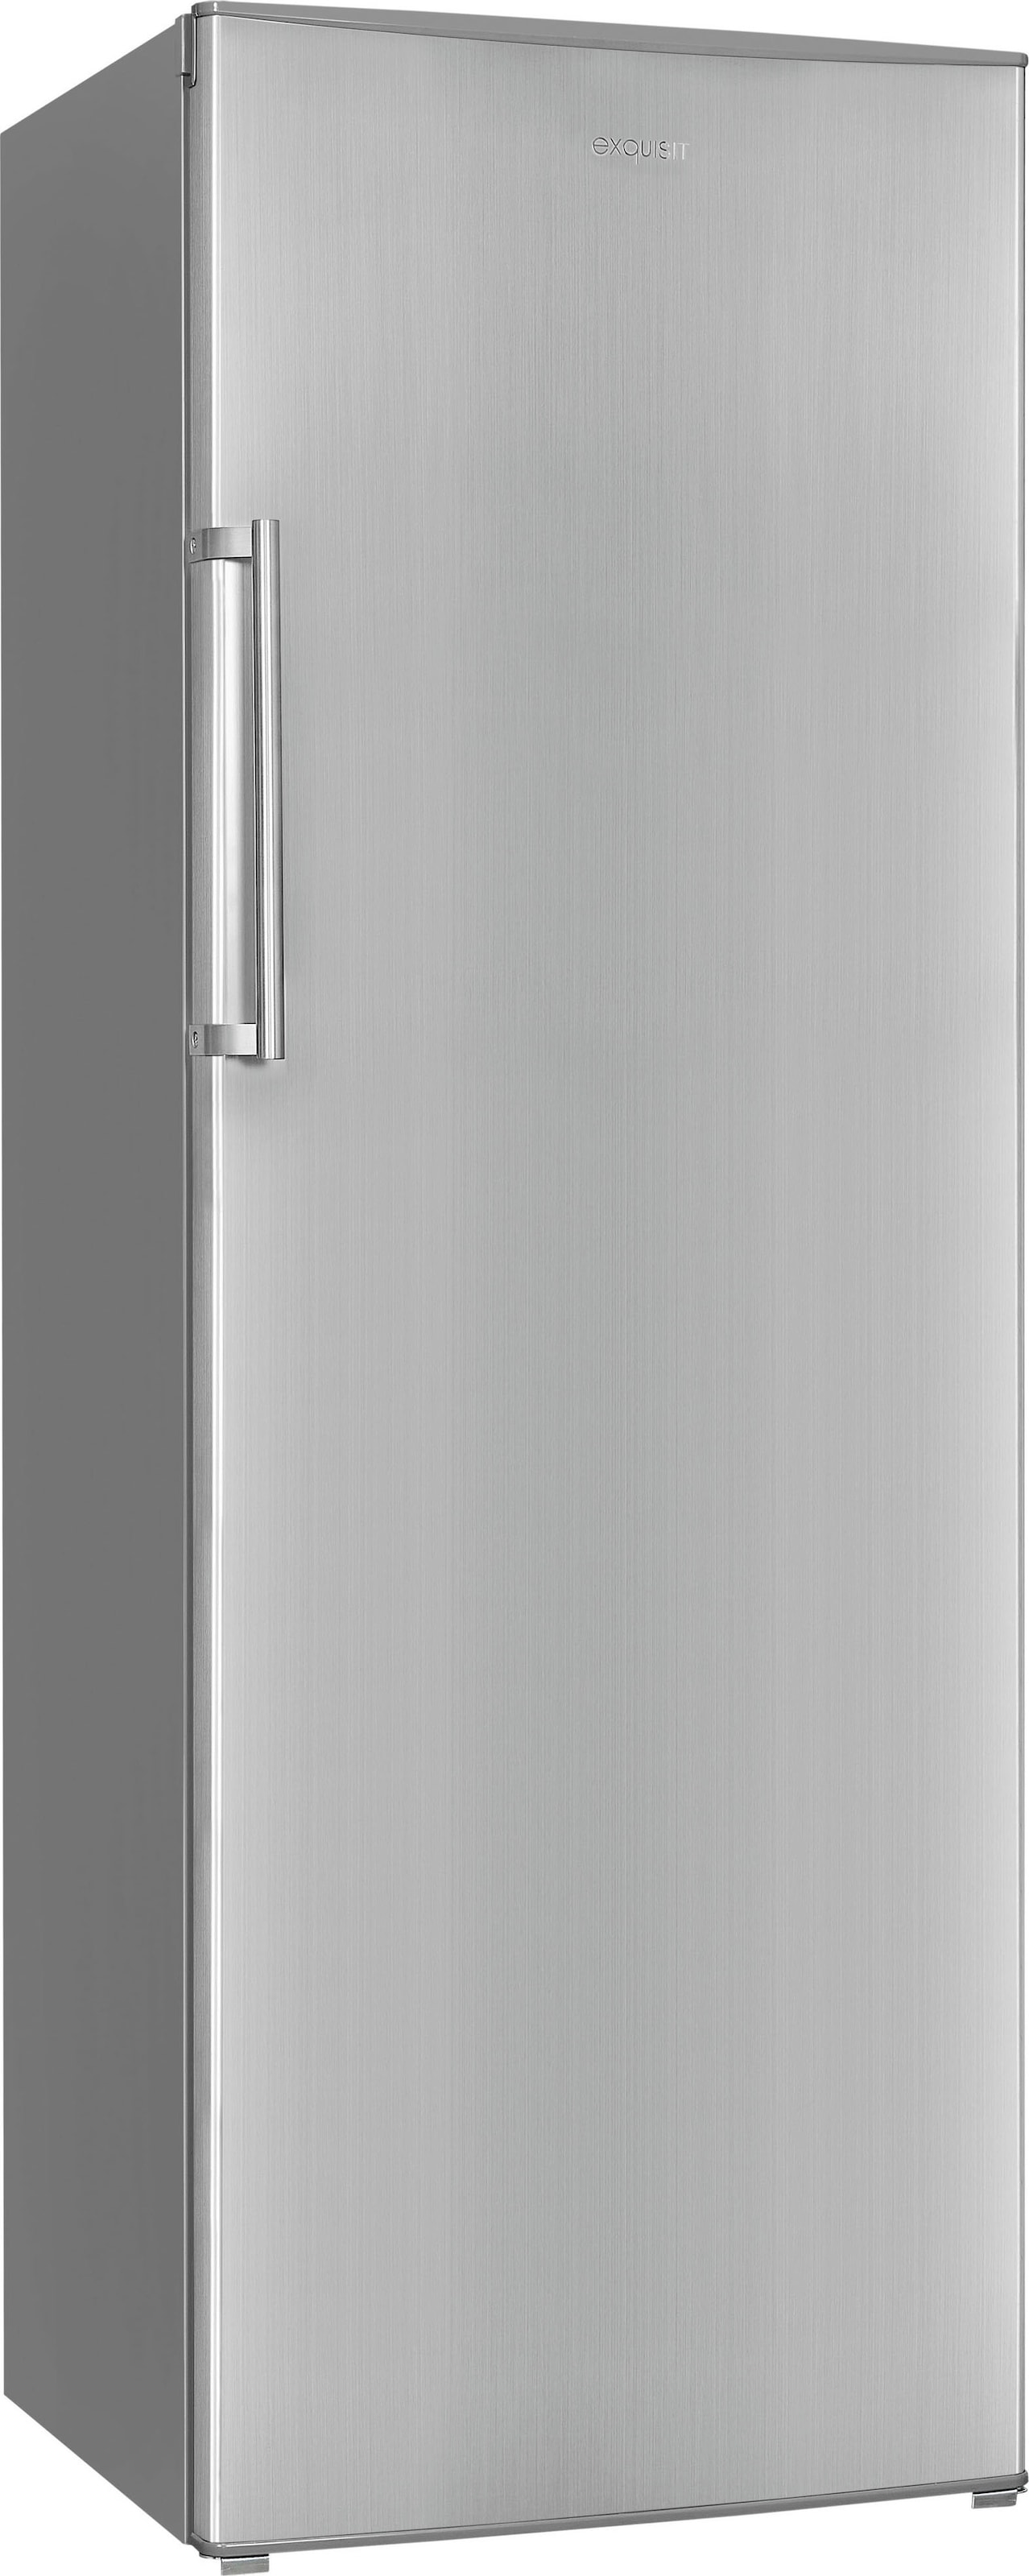 exquisit Gefrierschrank »GS280-HE-040D«, 171 cm hoch, 60 cm breit, 242 Liter Nutzinhalt, Display, Schnellgefrieren